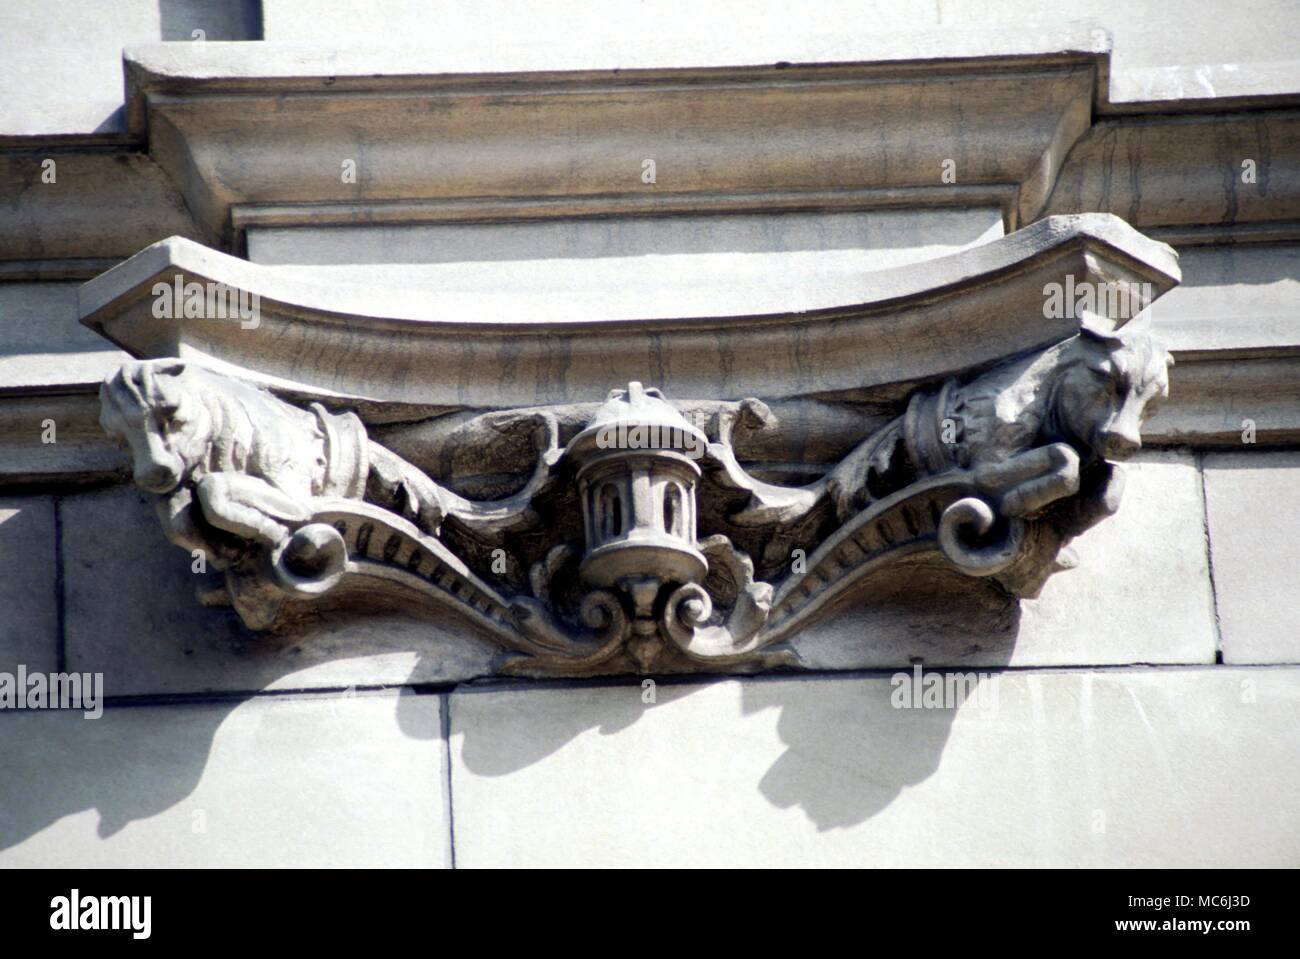 Les mythes de l'image de secours du Zodiaque Taureau Taureau représenté par deux têtes de taureau sur la façade de la Banque d'Écosse, Édimbourg St George dans la conception du xixe siècle Banque D'Images